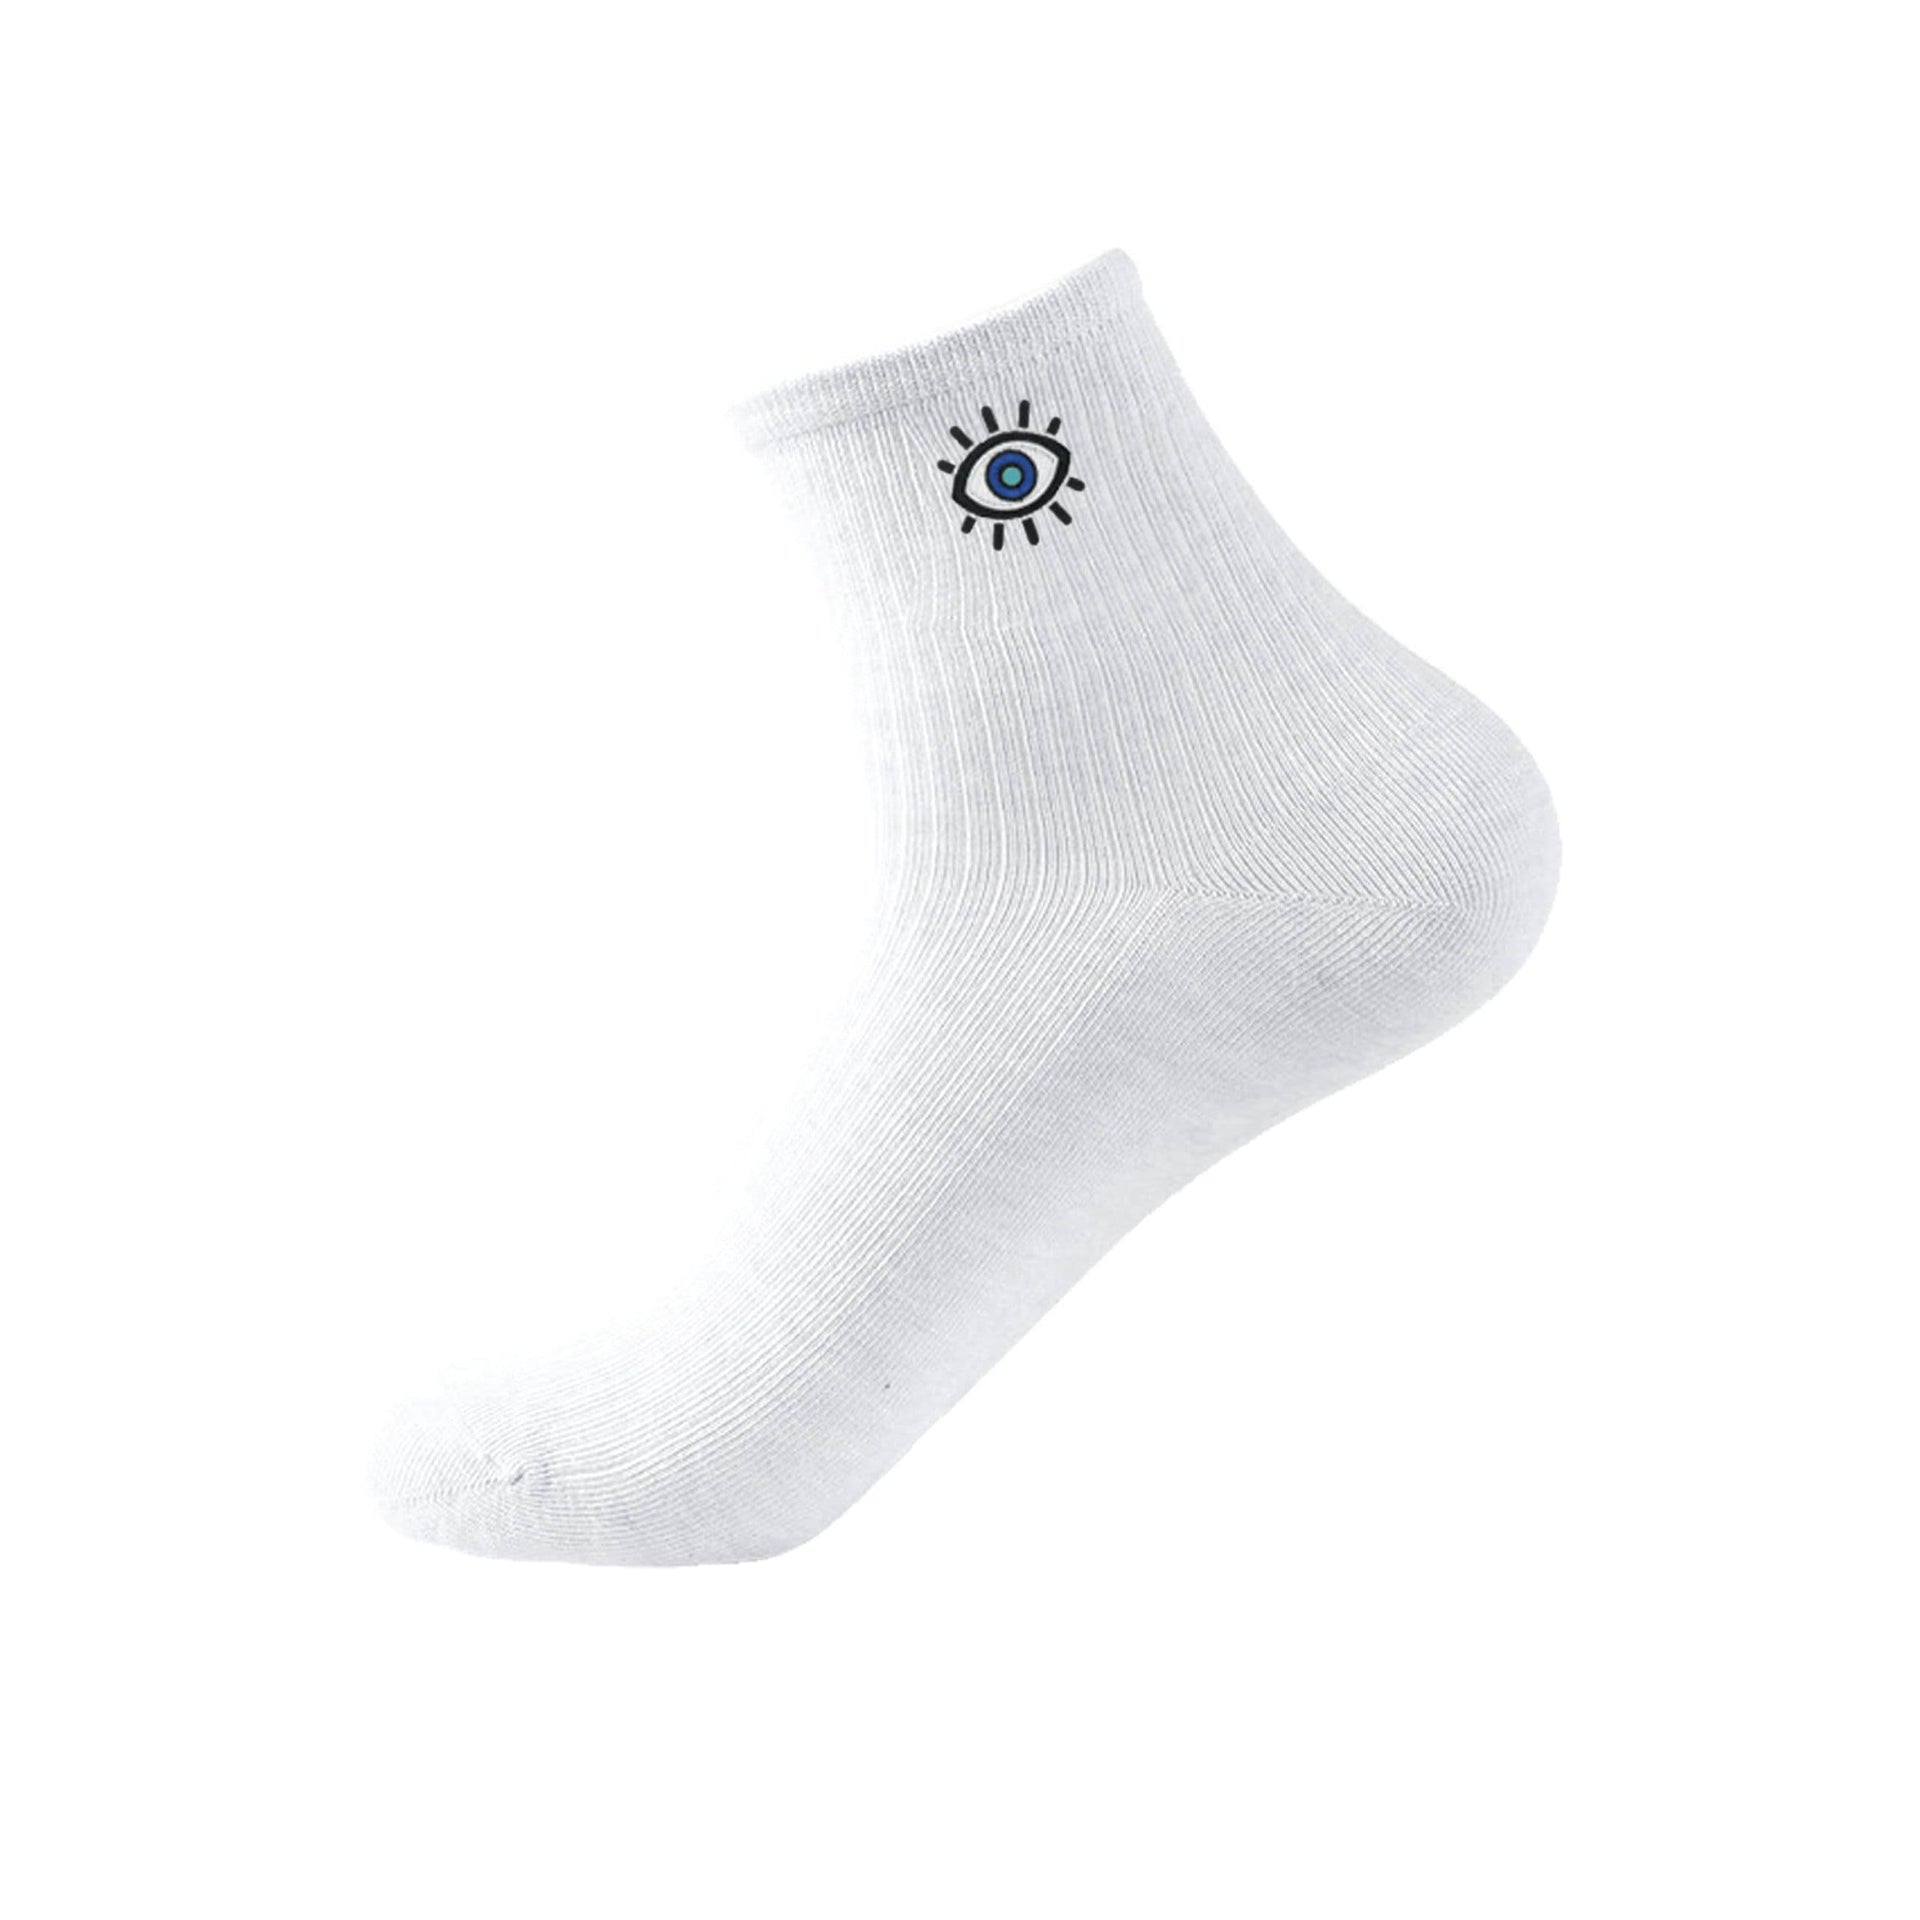 Drawn Goods Socks White / One Size Evil Eye Tennis Socks